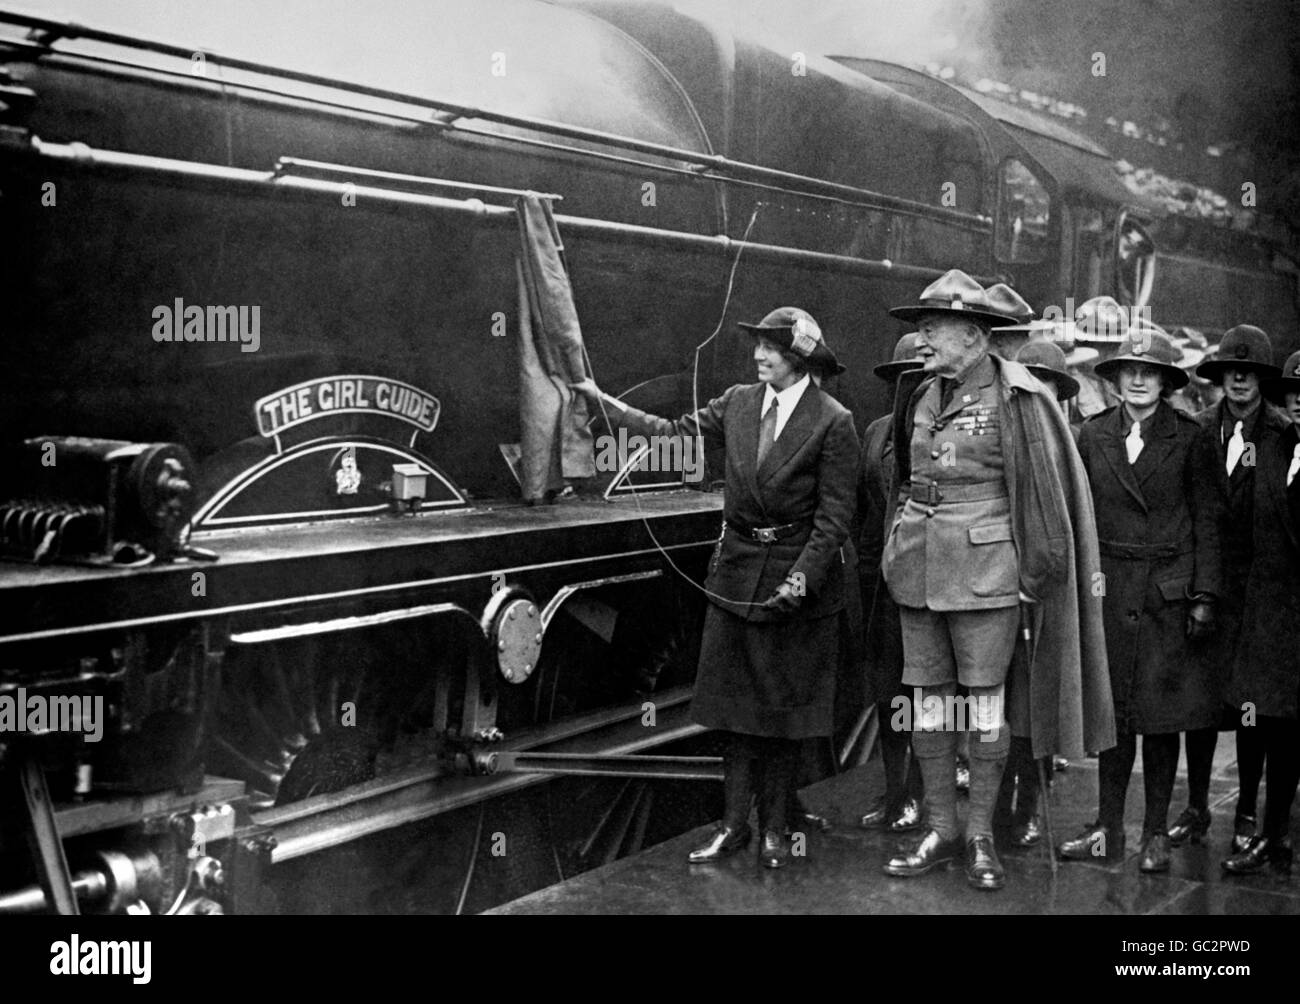 Sir Robert et Lady Olave Baden-Powell, le Chef Scout et le Chef Guide, lancent la nouvelle locomotive de la classe Royal Scot, Nr.6188, 'le Guide de fille'. Banque D'Images